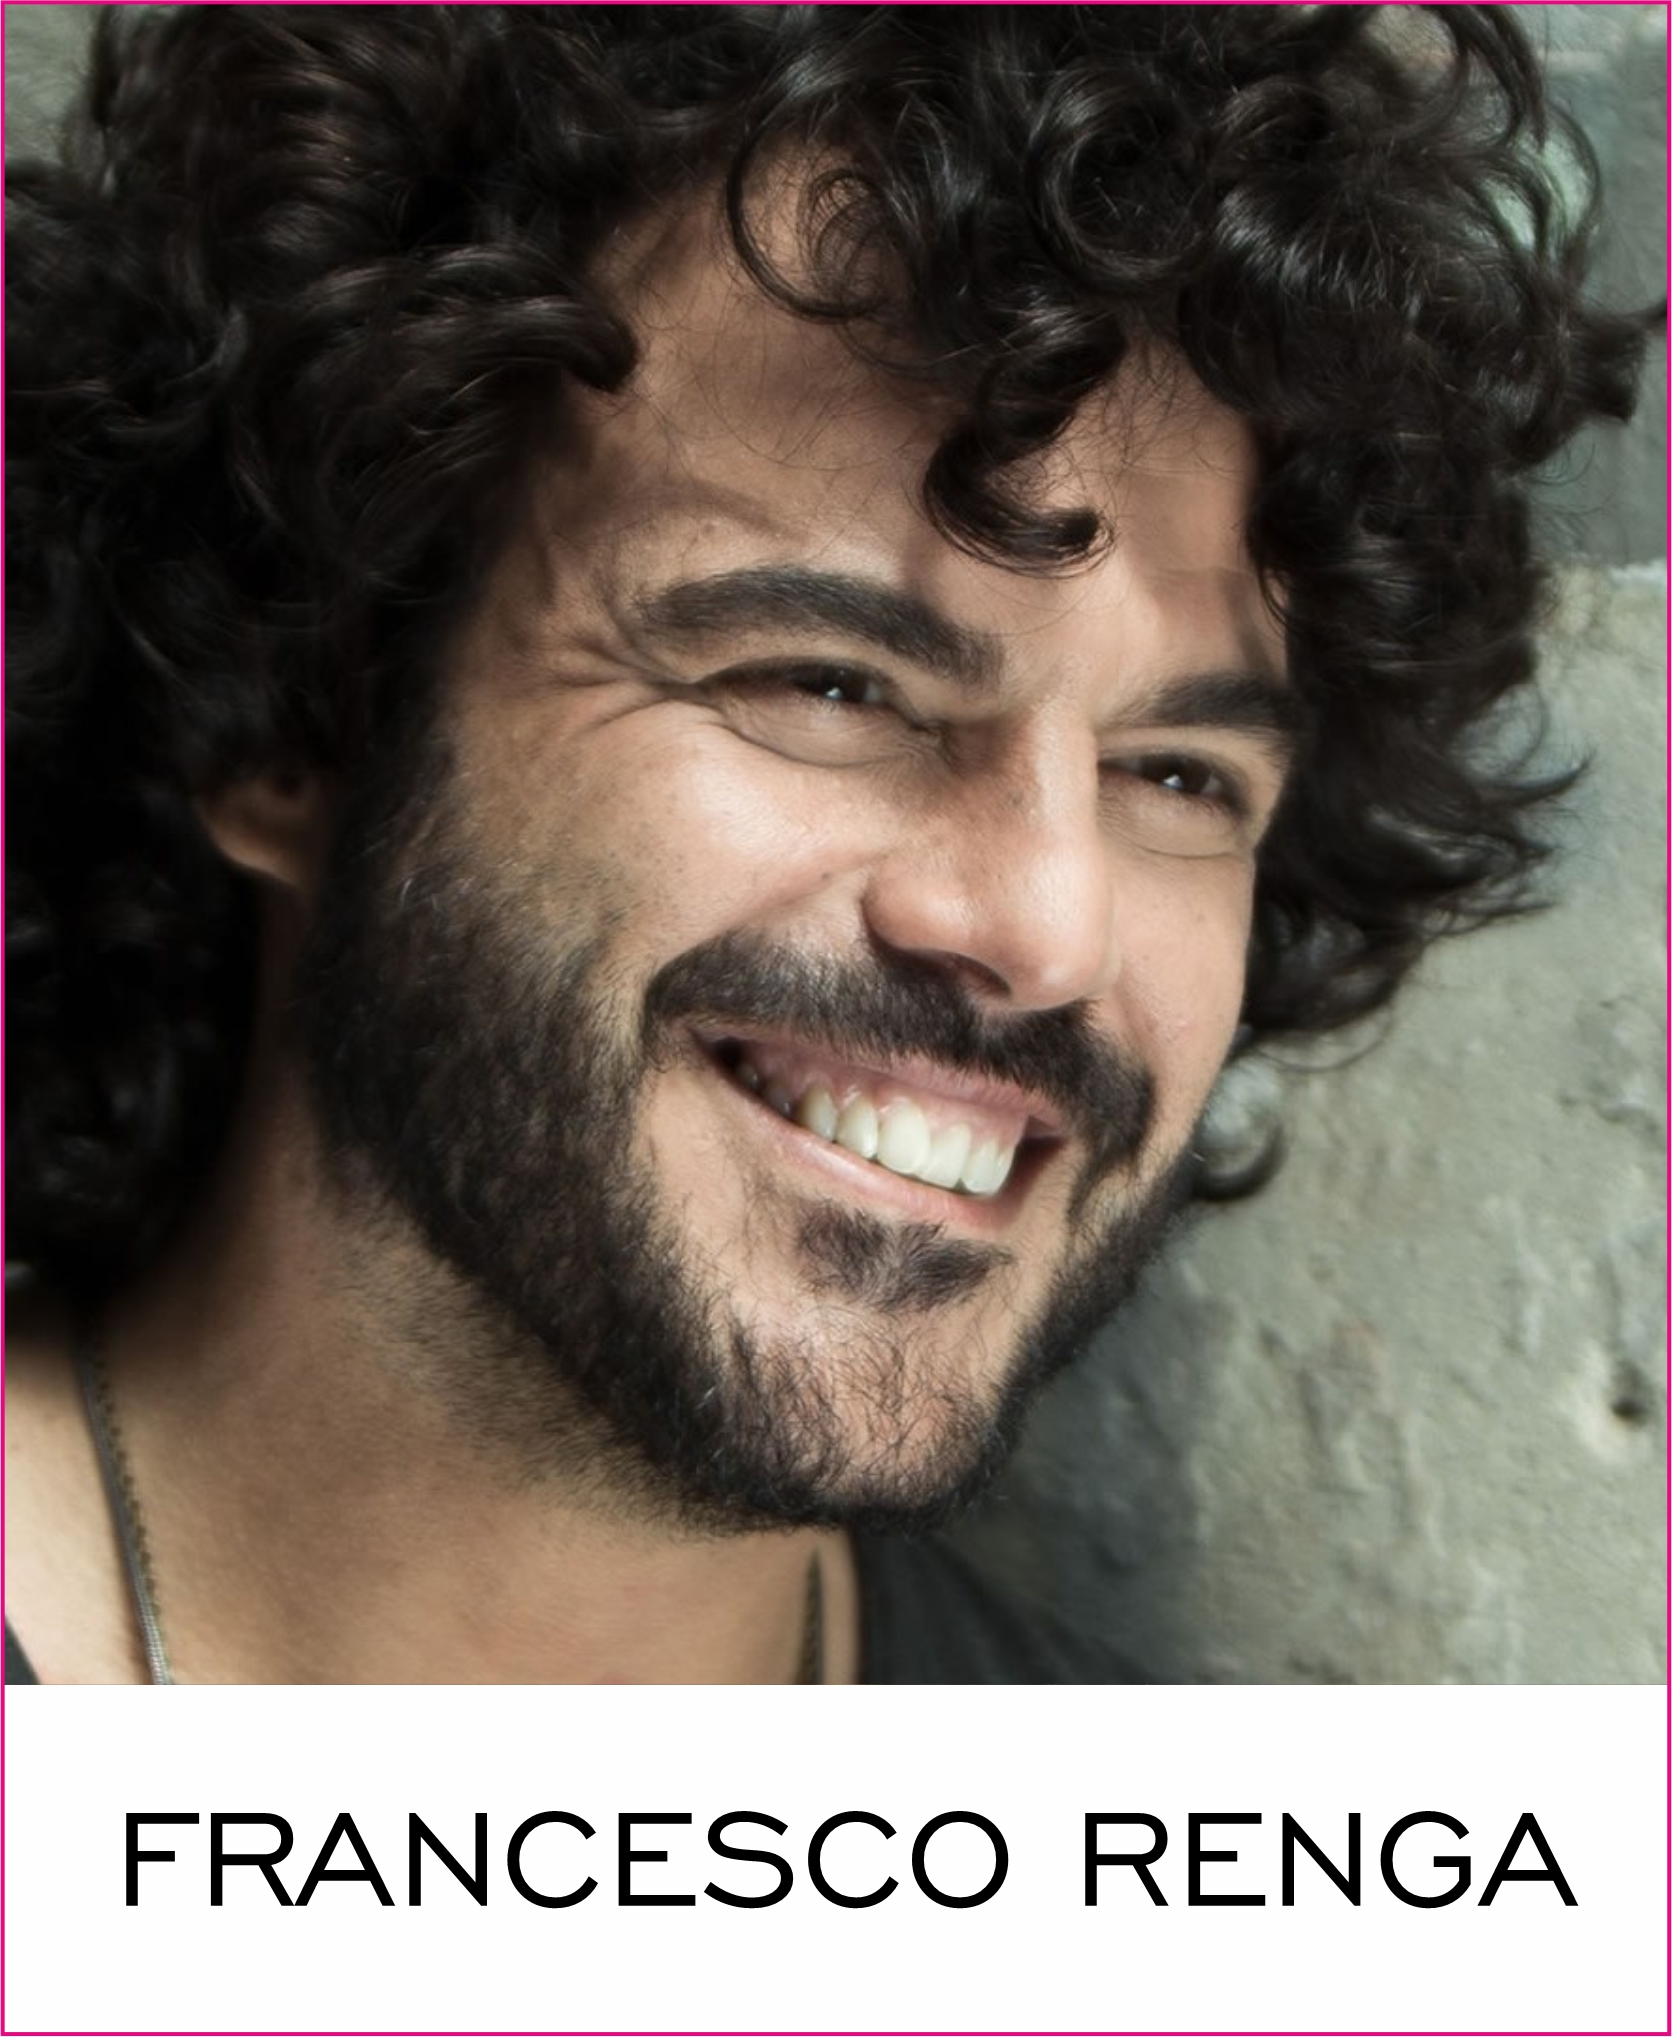 Francesco Renga